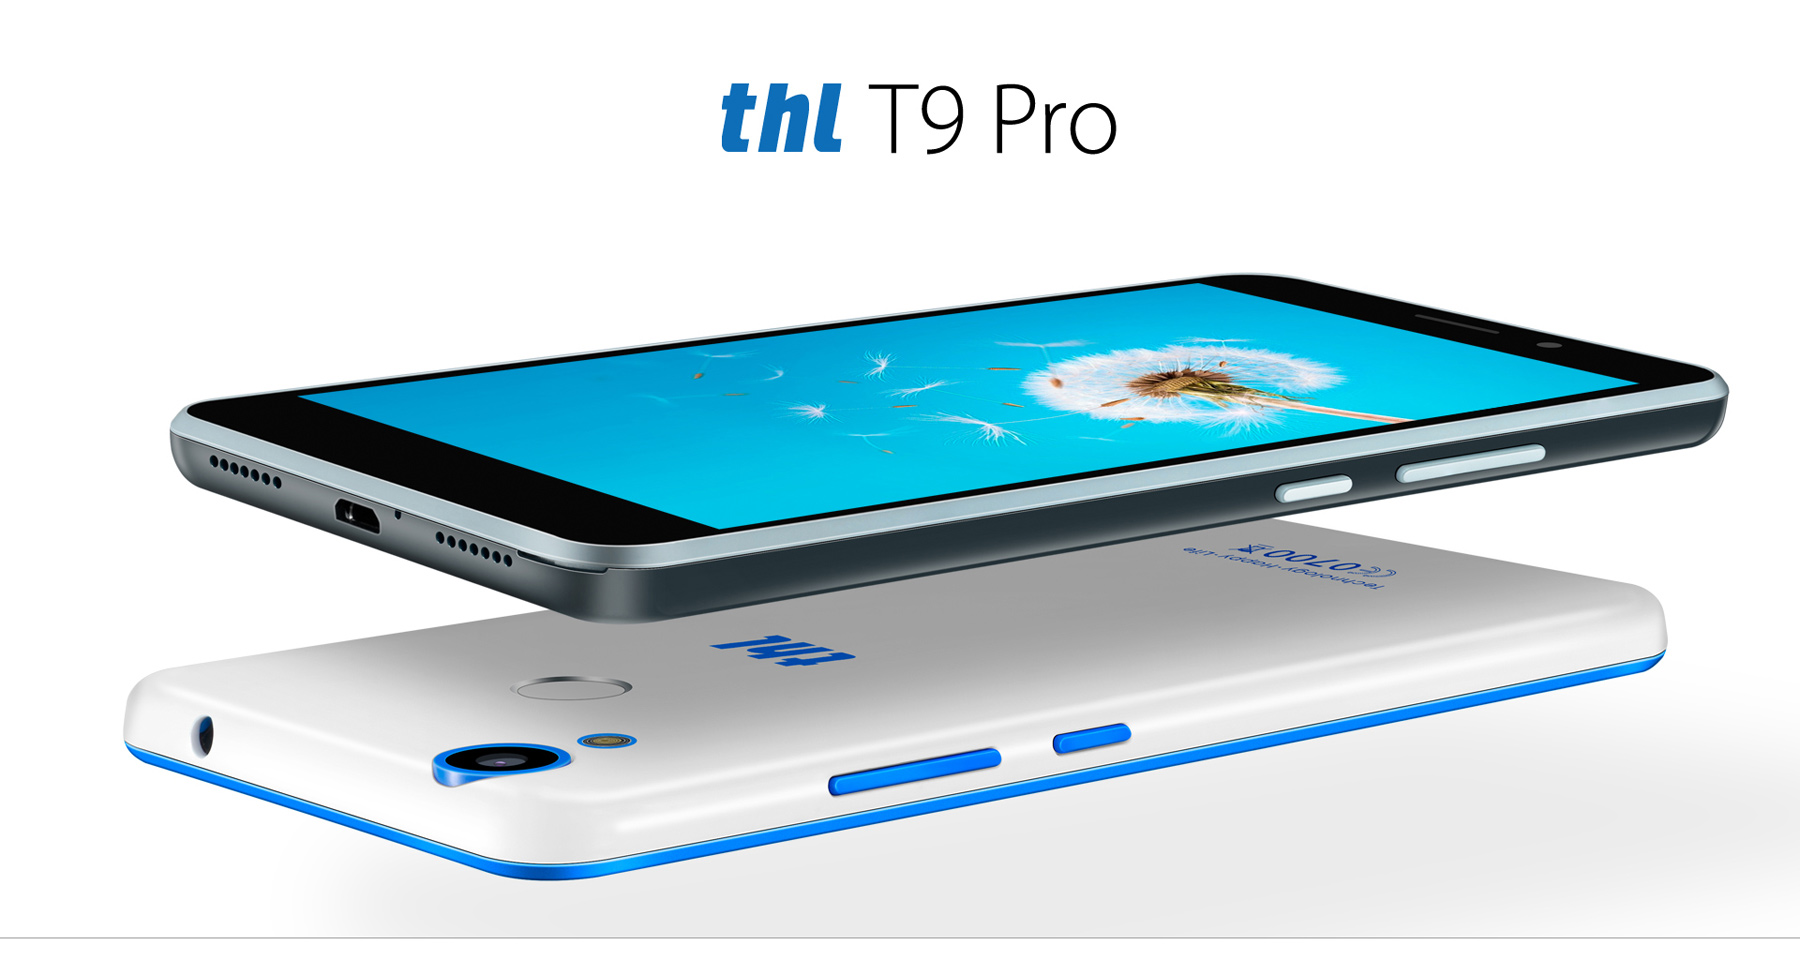 THL T9 Pro